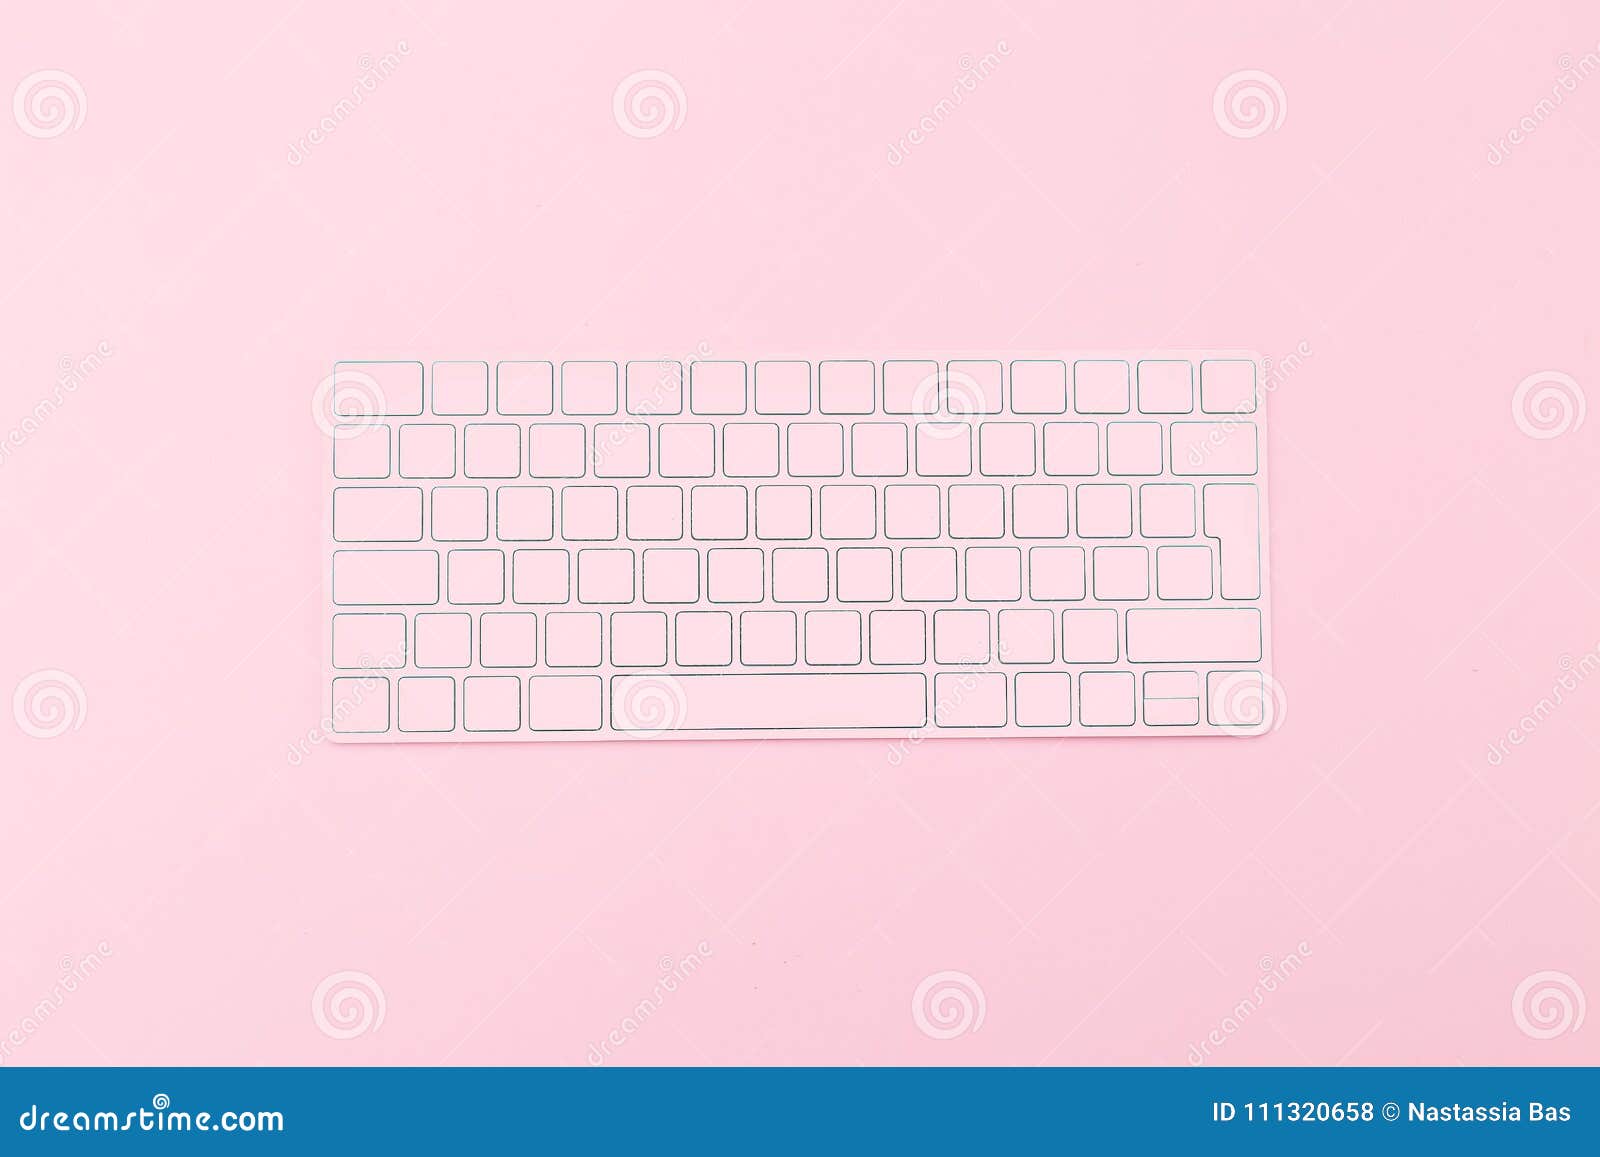 Với nền hồng nhạt xinh xắn trên bàn phím, một cảm giác mới lạ đang chờ đón bạn. Hãy thưởng thức hình ảnh và cảm nhận sự mềm mại của gam màu này trên bàn phím của bạn.